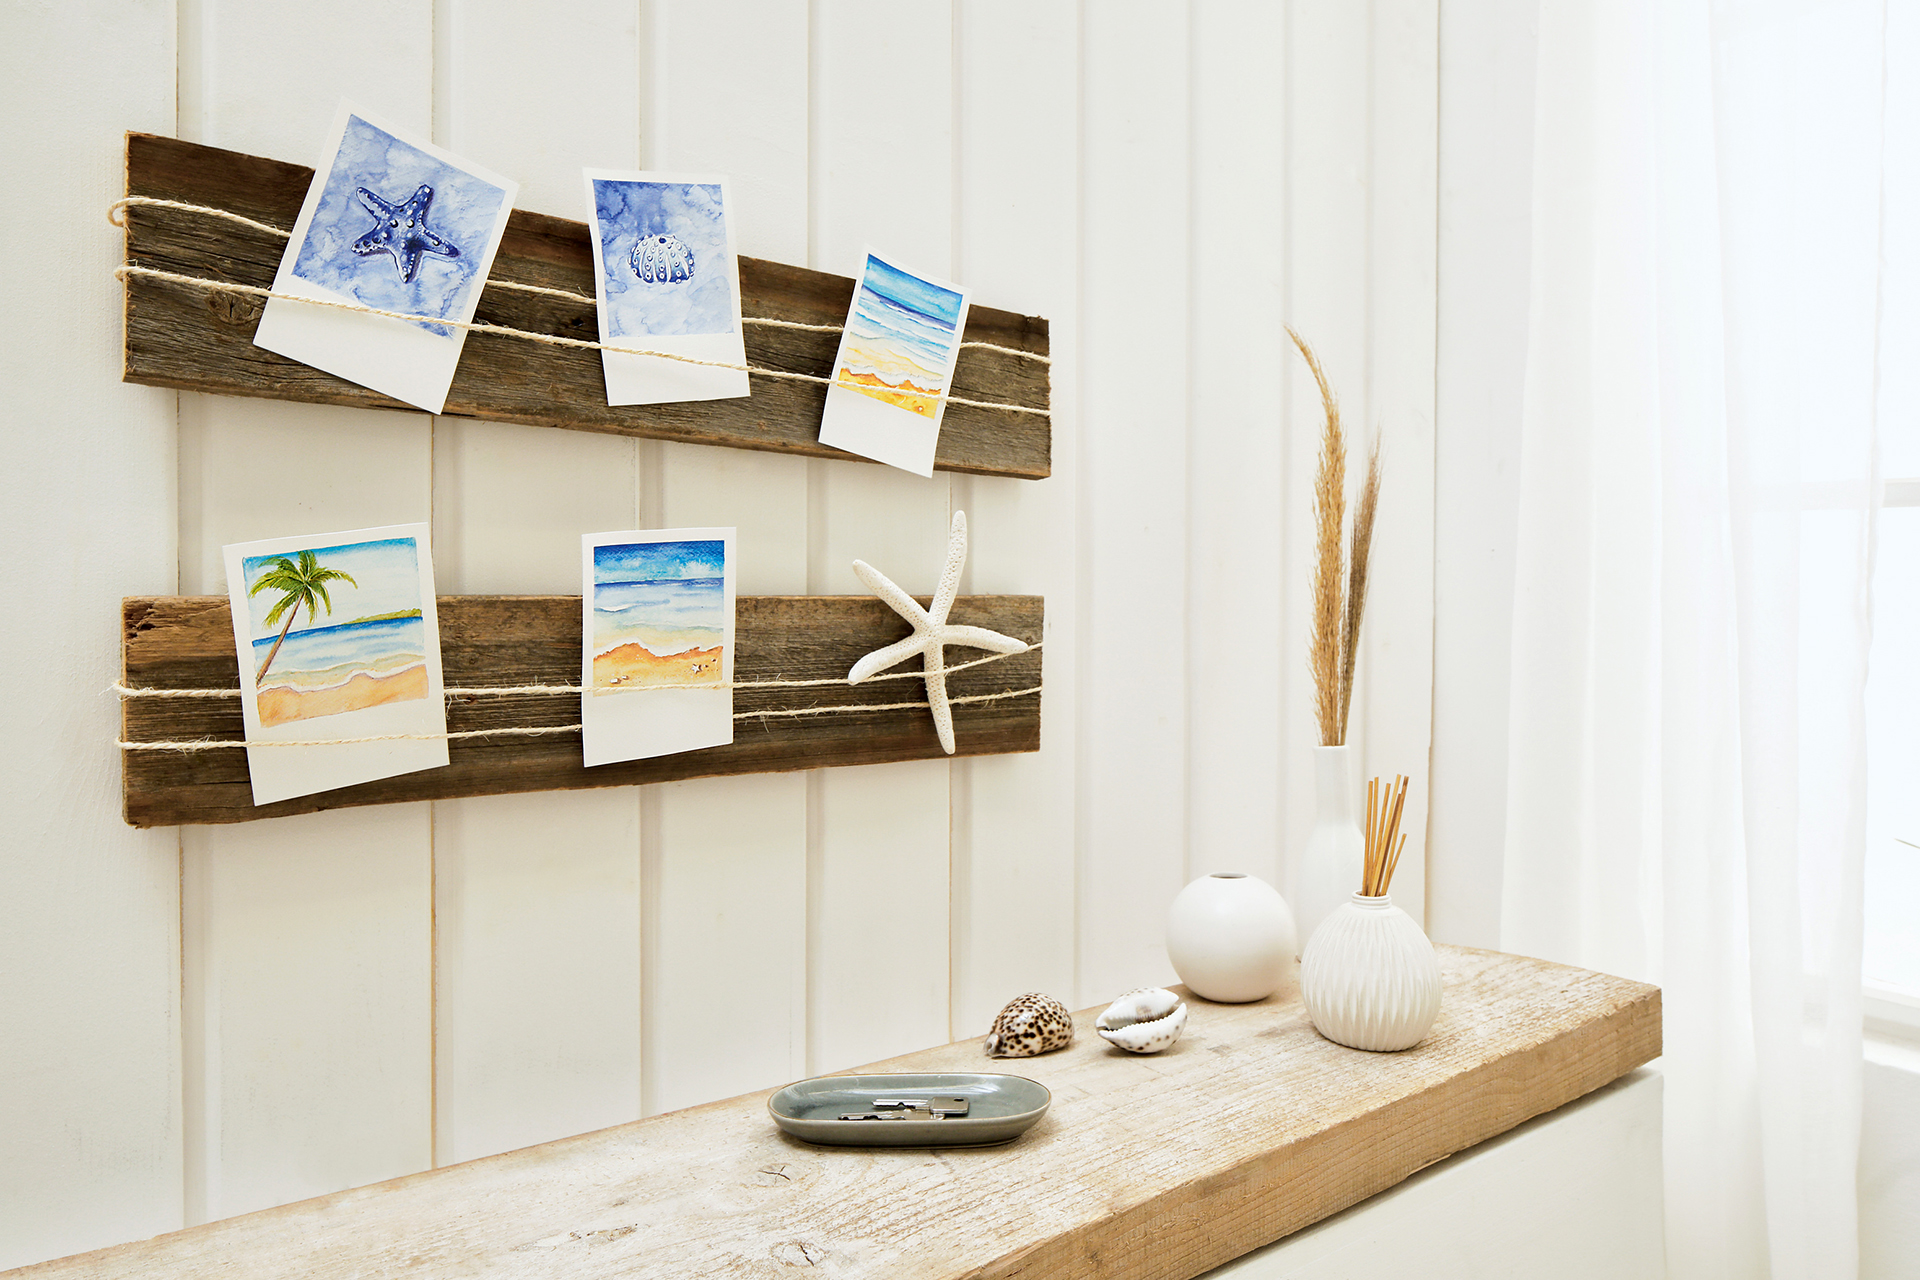 Aufgespannt auf einer Holzdiele wirken die Polaroid-Aquarelle besonders hübsch